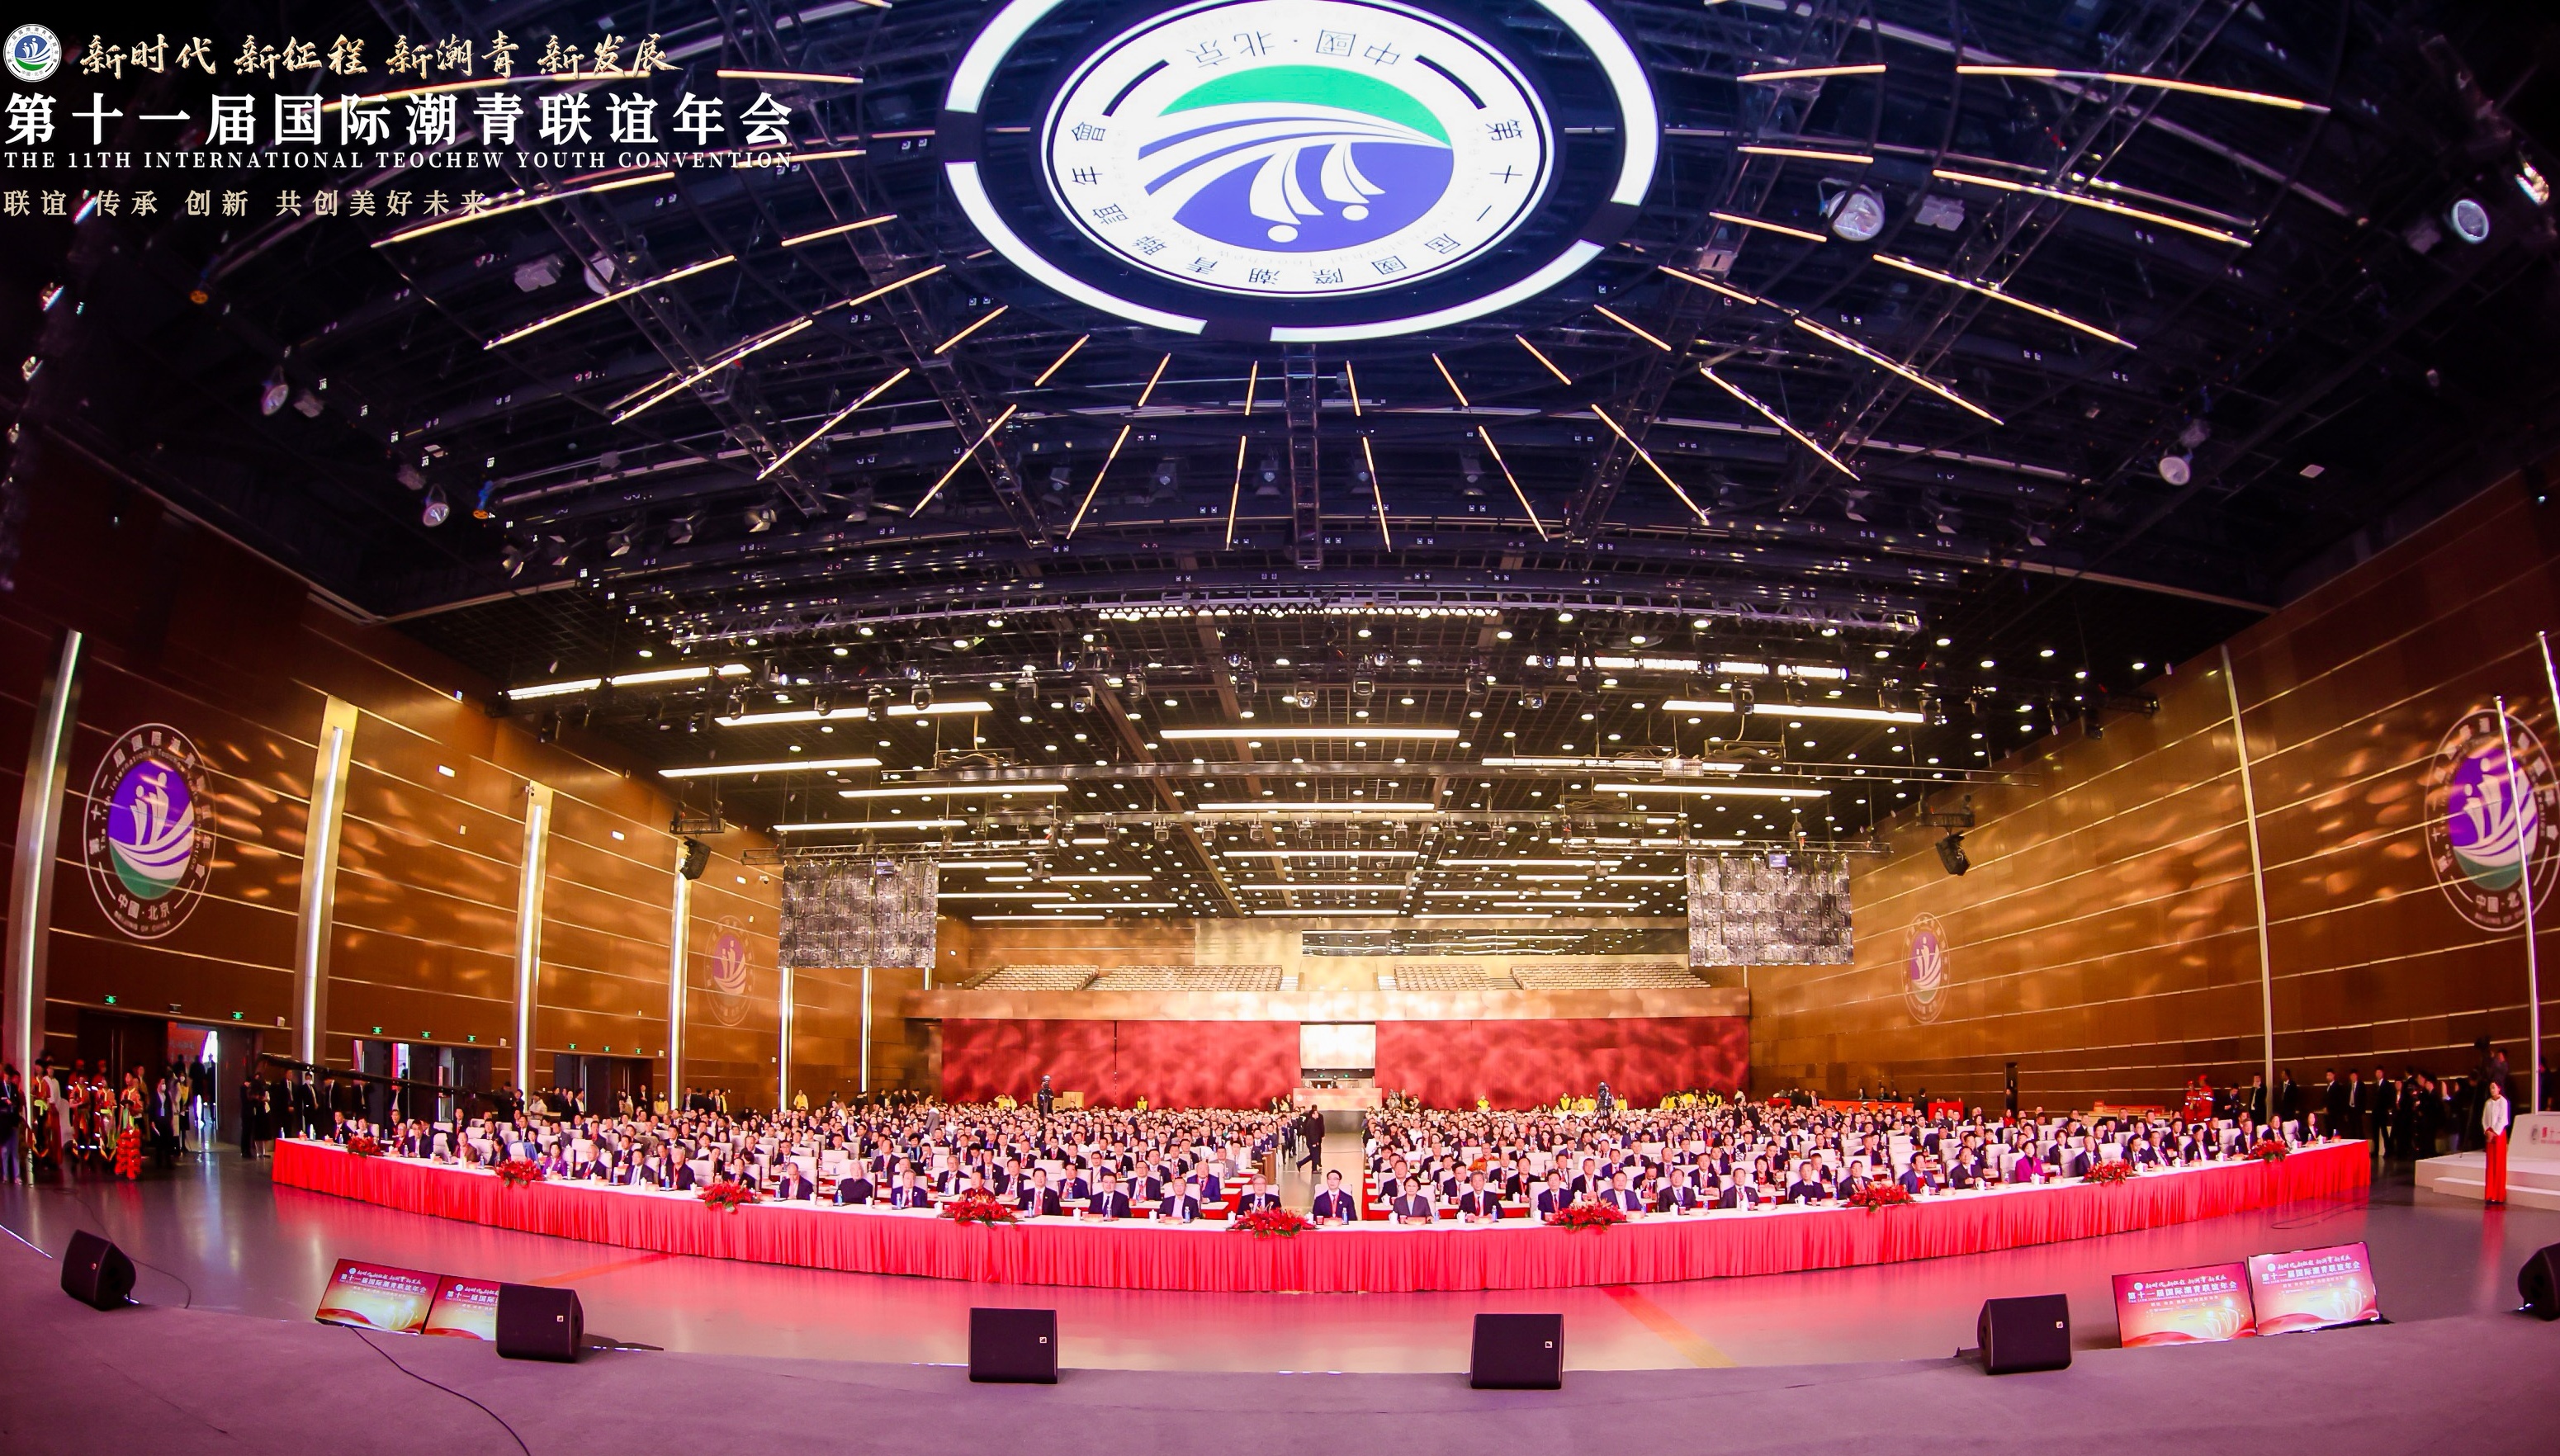 第十一届国际潮青联谊年会在北京隆重举行 大会荣聘我会黄瑞杰会长为荣誉主席(图12)